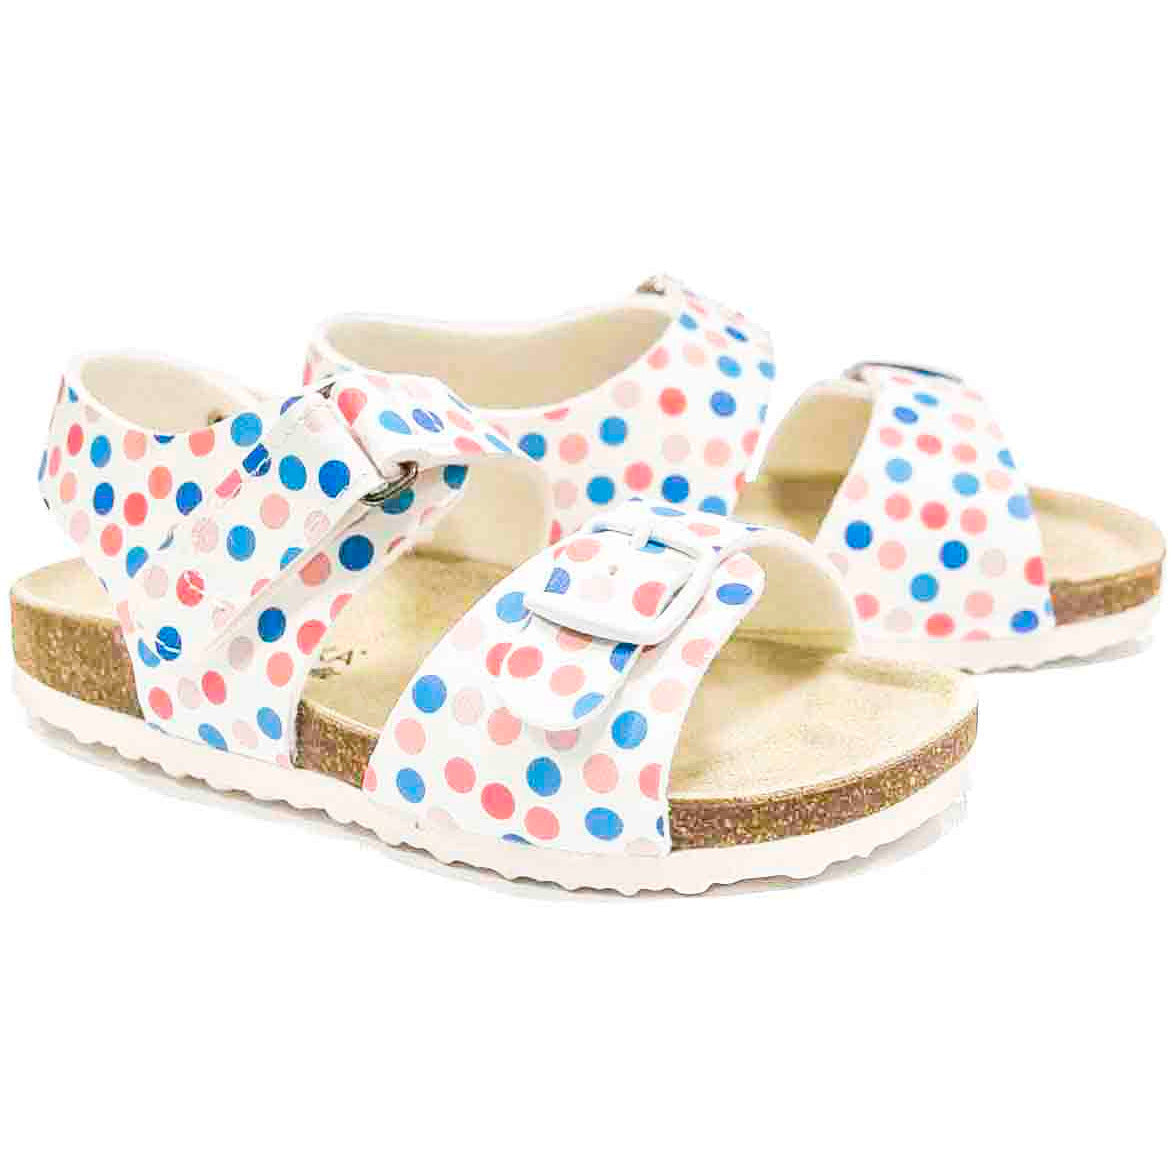 orthotic older girls sandals : T97: polka dots